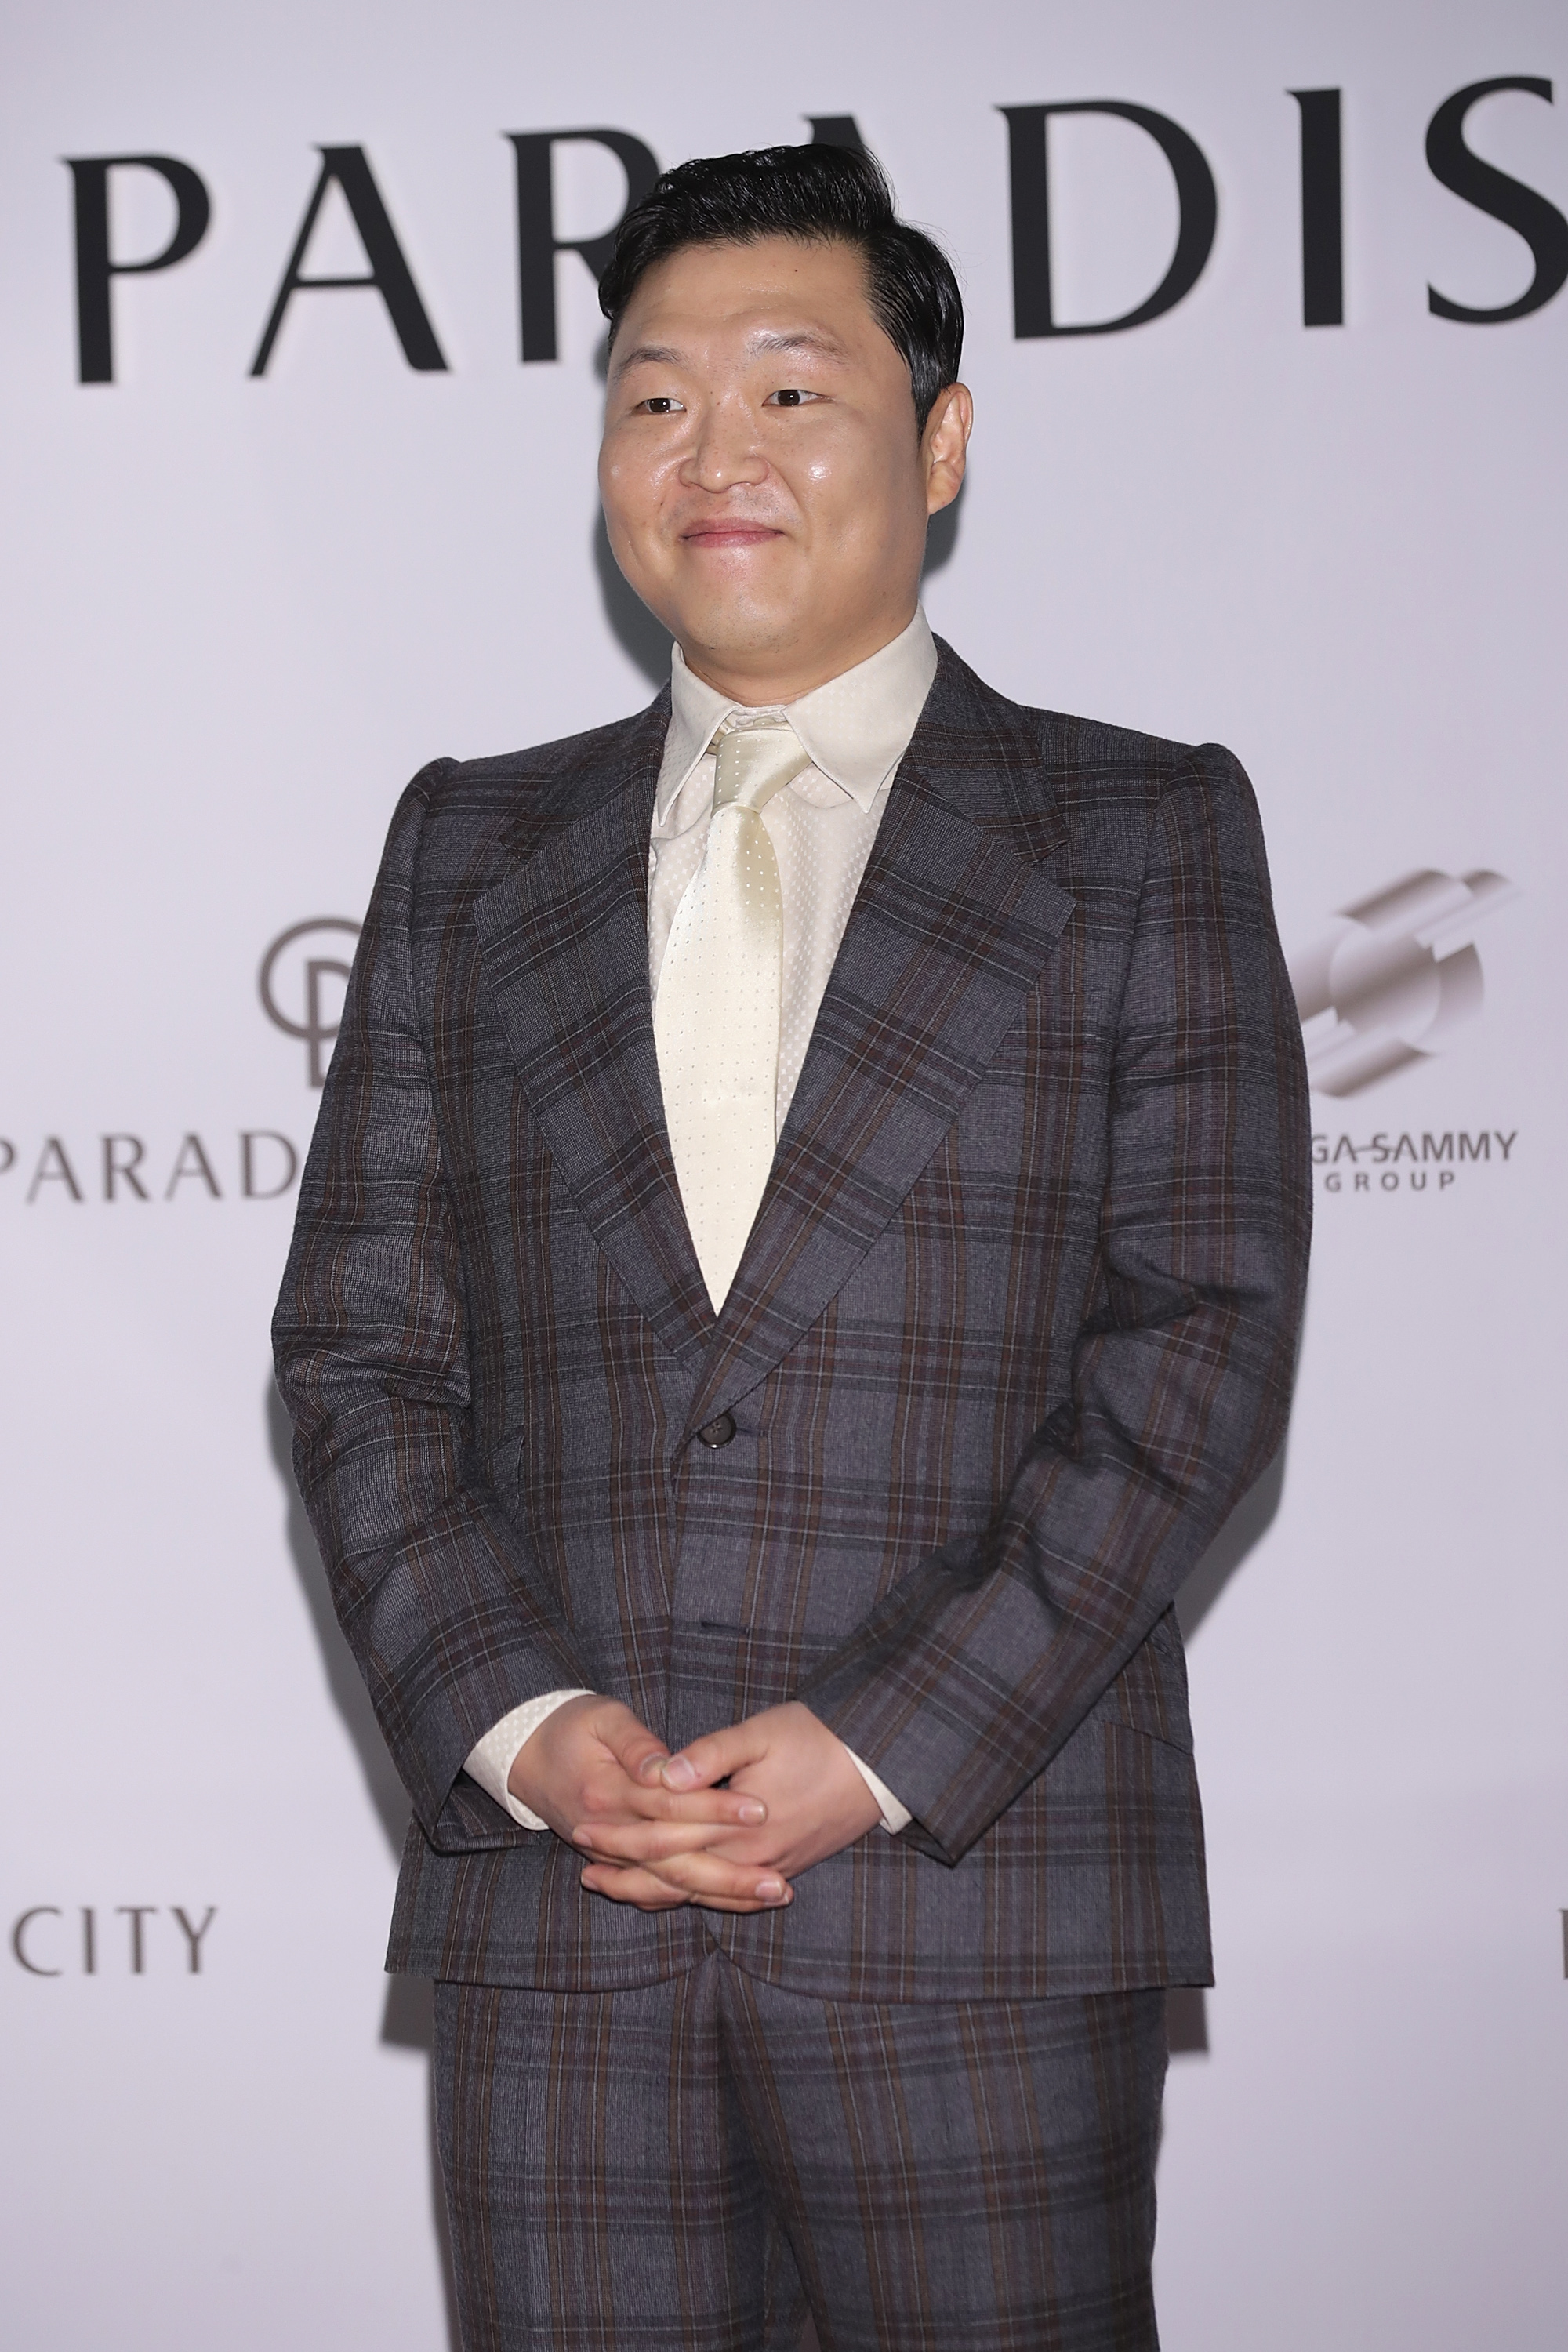 Psy en el gran estreno de "PARADISE CITY", el 20 de abril de 2017, en Incheon, Corea del Sur. | Foto: Getty Images